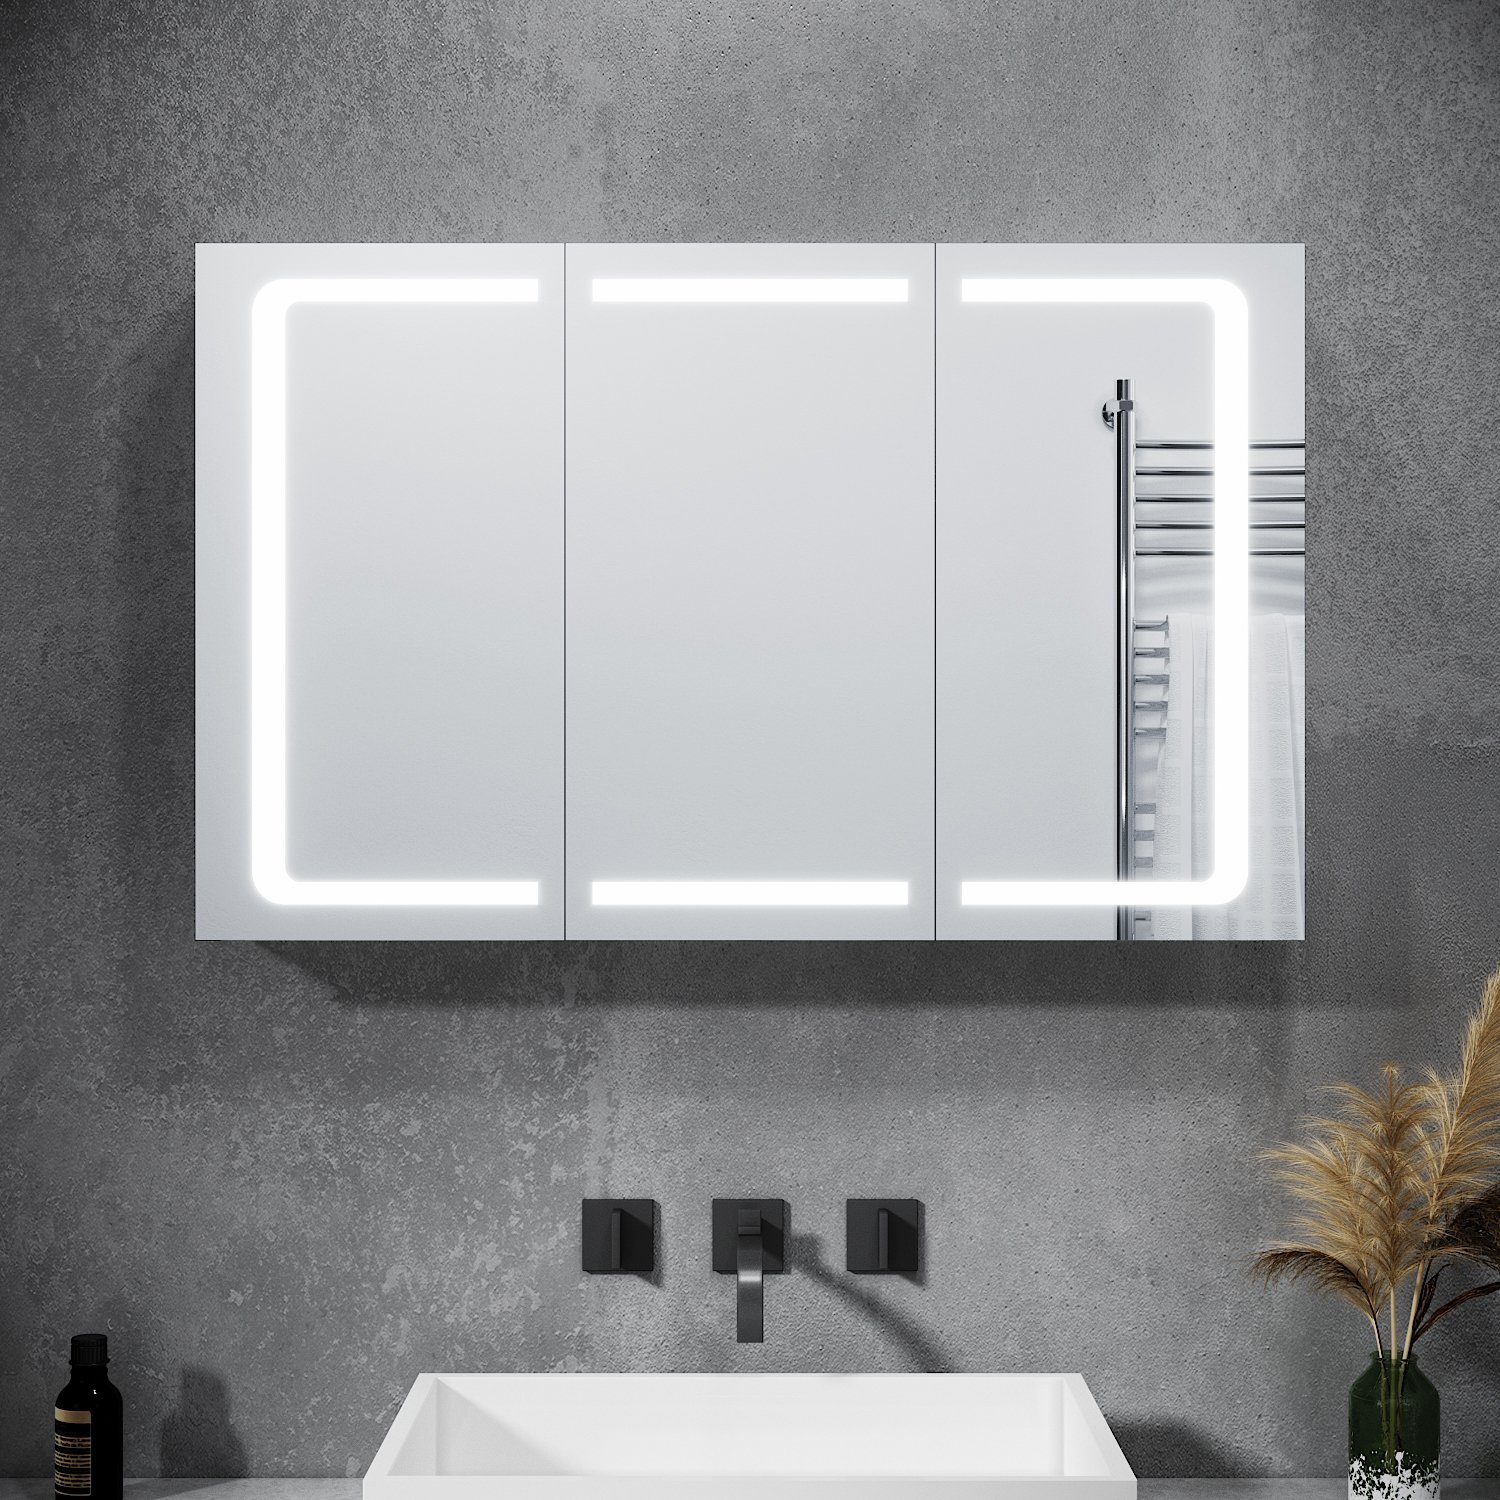 SONNI Spiegelschrank »Bad Spiegelschrank 3 türig 105 x 65 cm Spiegelschrank  Bad mit Beleuchtung und Steckdose Badezimmerspiegel LED Spiegelschrank mit  Kippschalter« online kaufen | OTTO